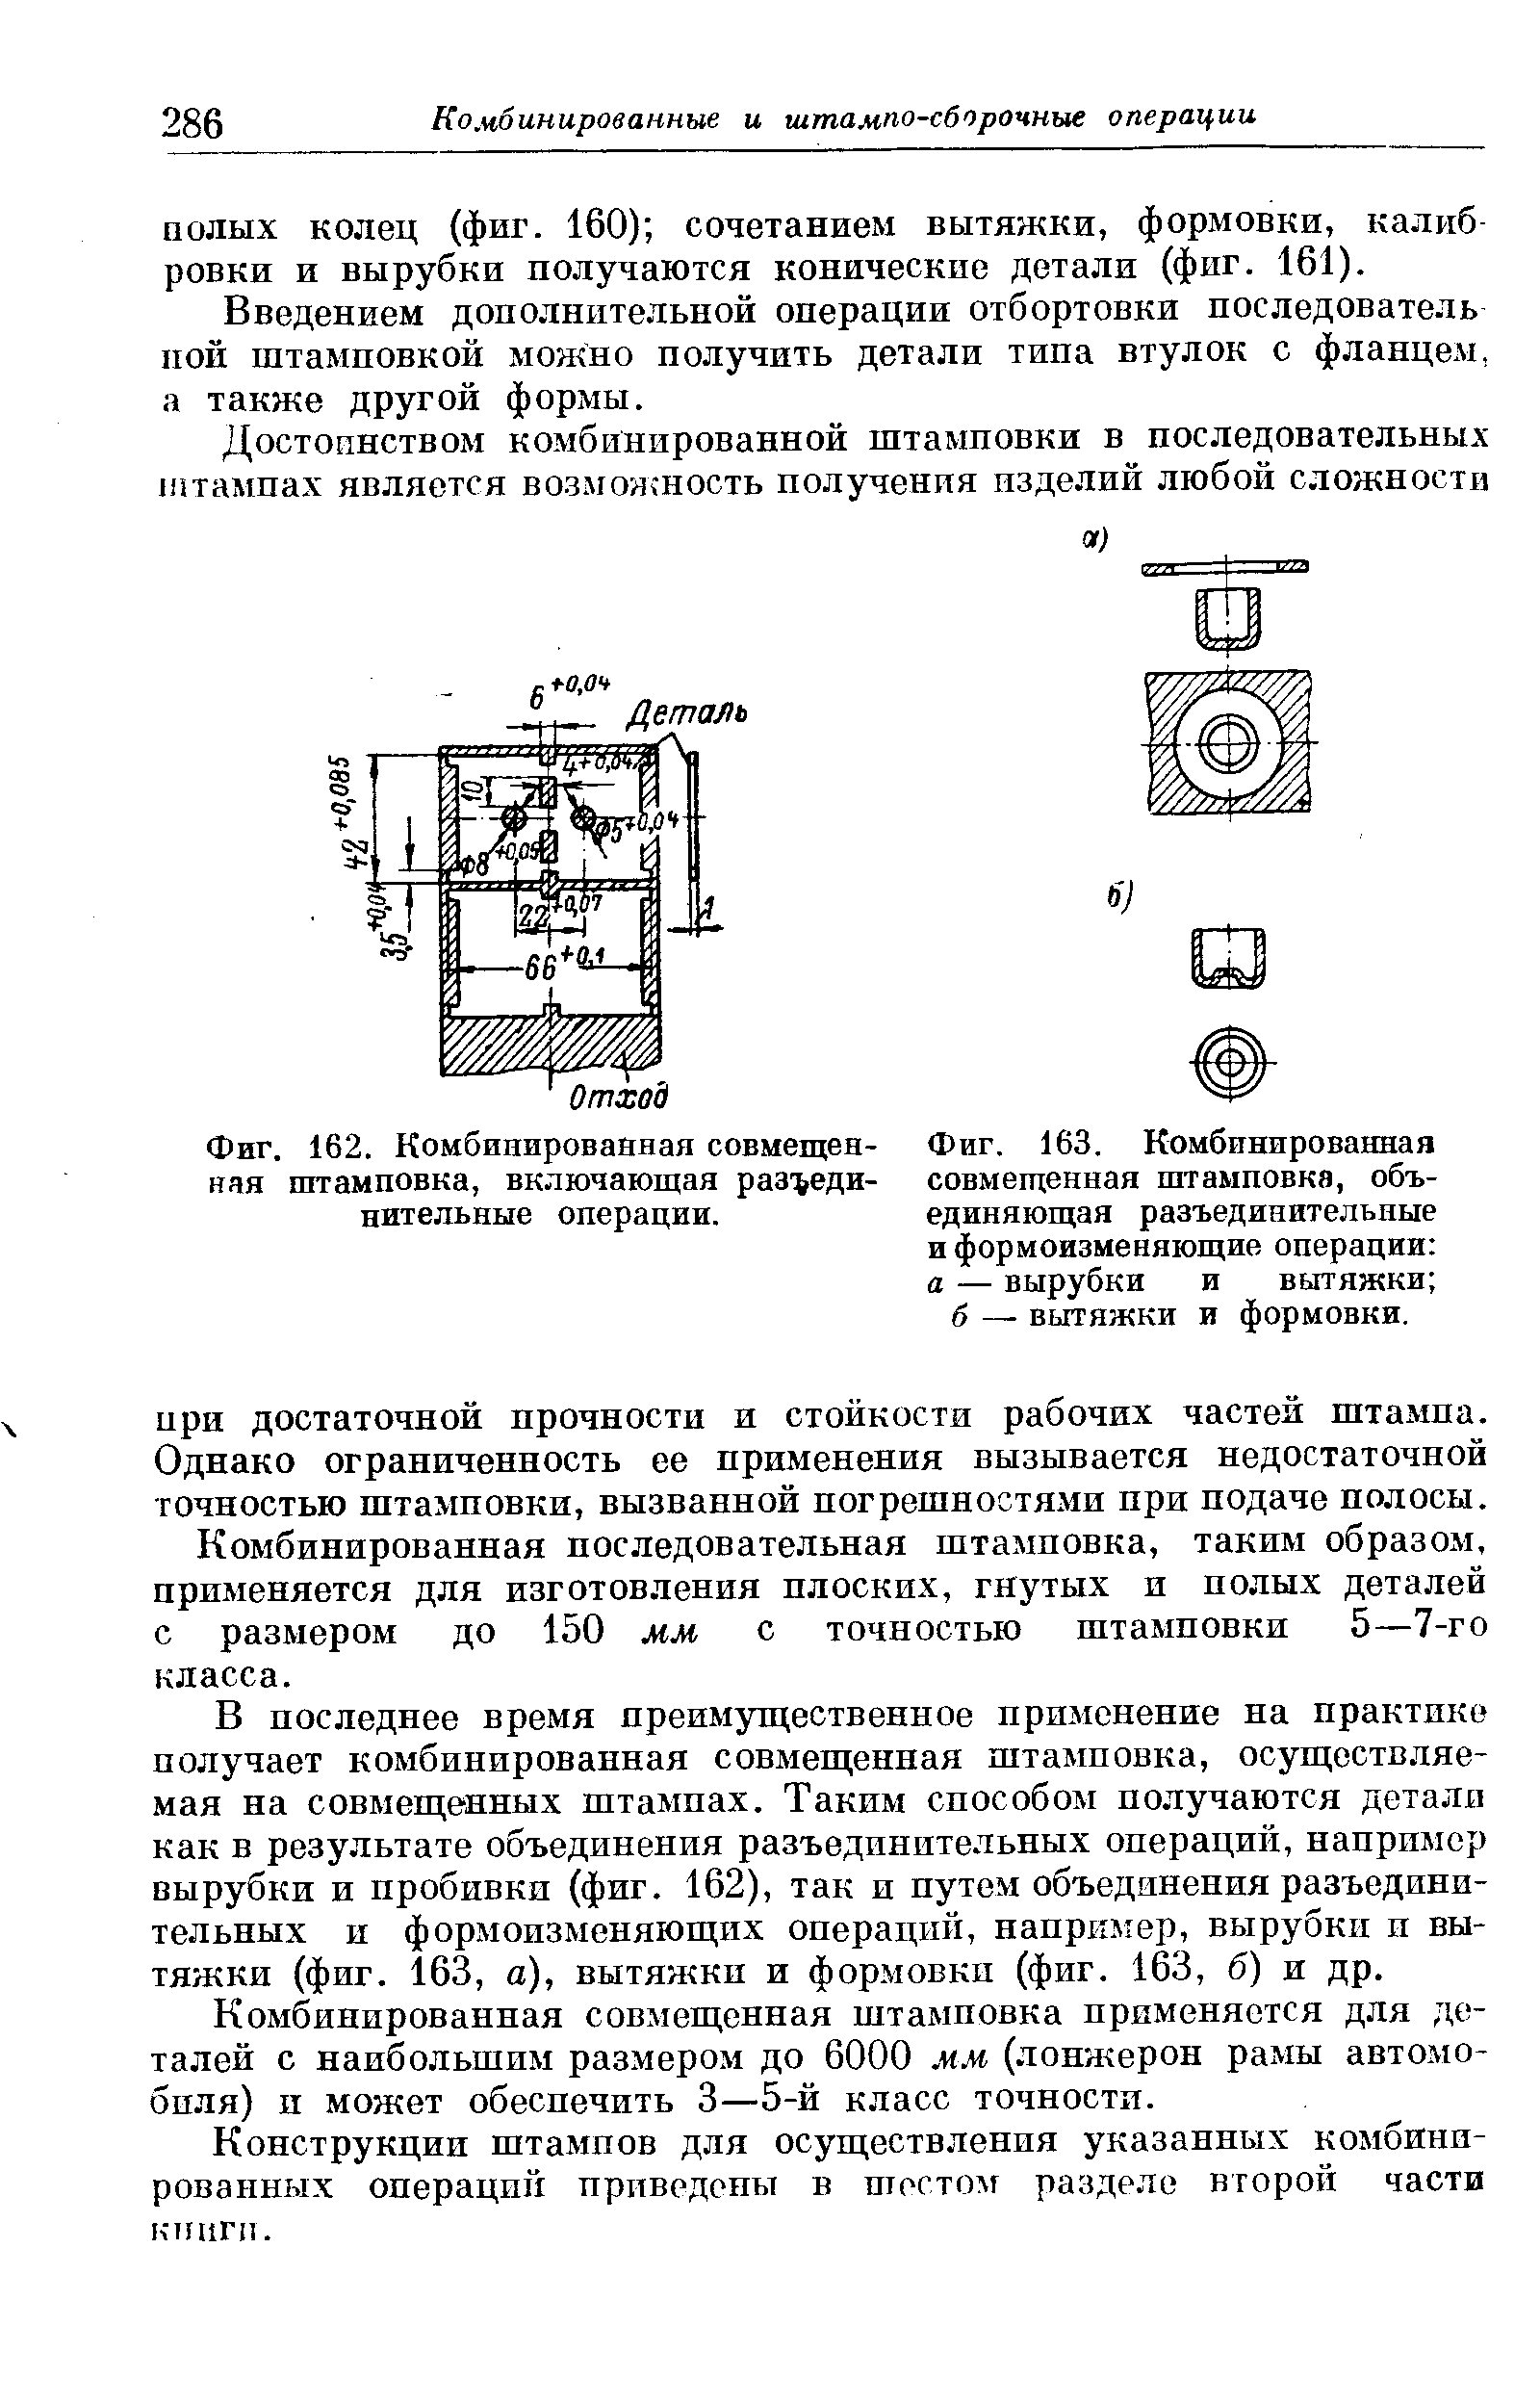 Фиг. 163. Комбинированная совмещенная штамповка, объединяющая разъединительные и формоизменяющие операции а — вырубки и вытяжки 
